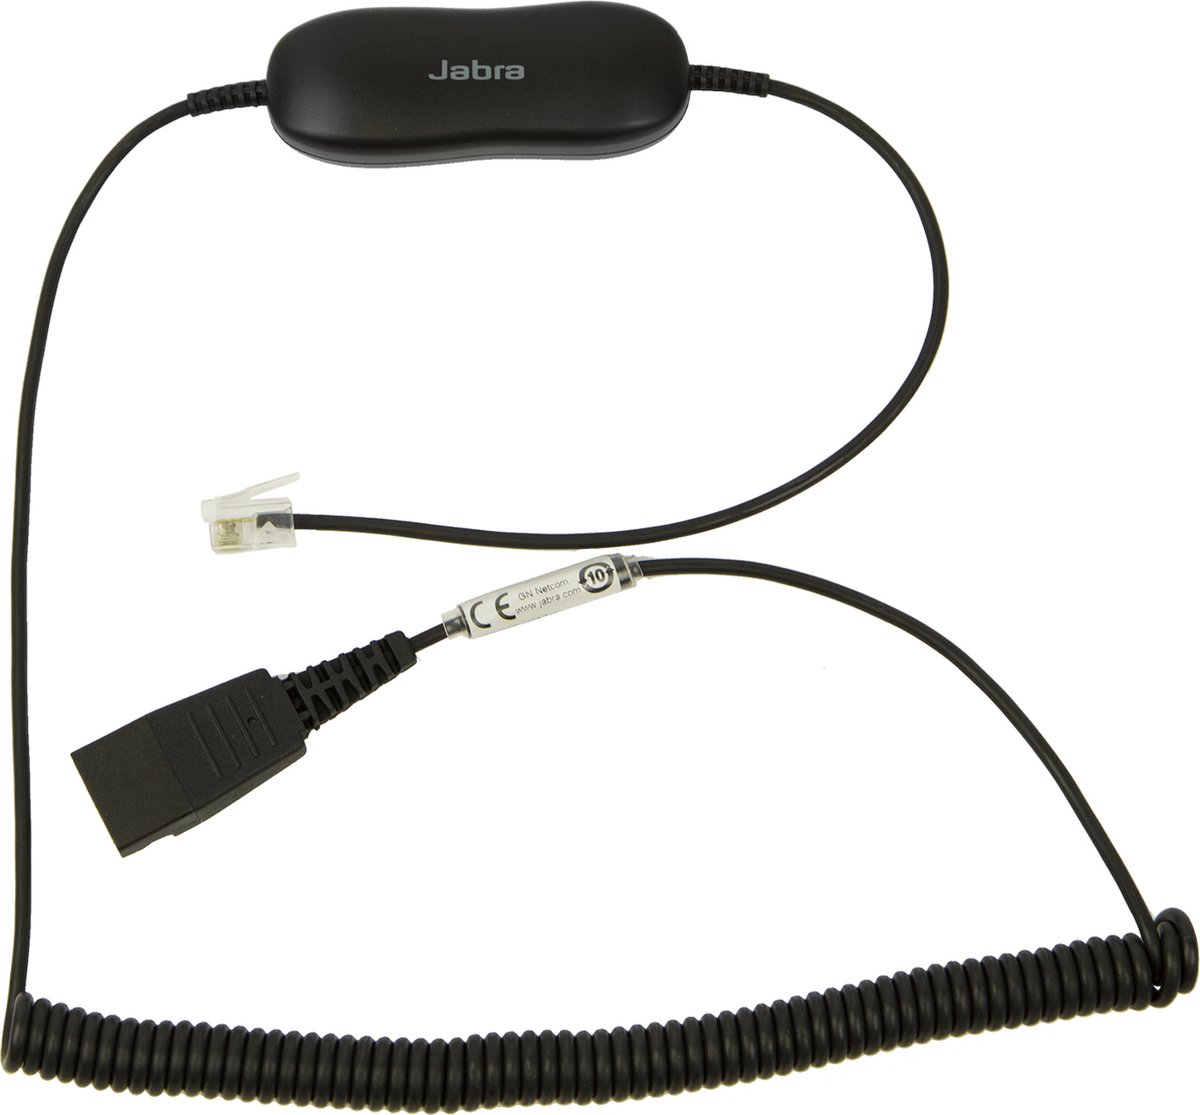 Telephone cable Jabra 88001-04 (2 m) 0,8 m